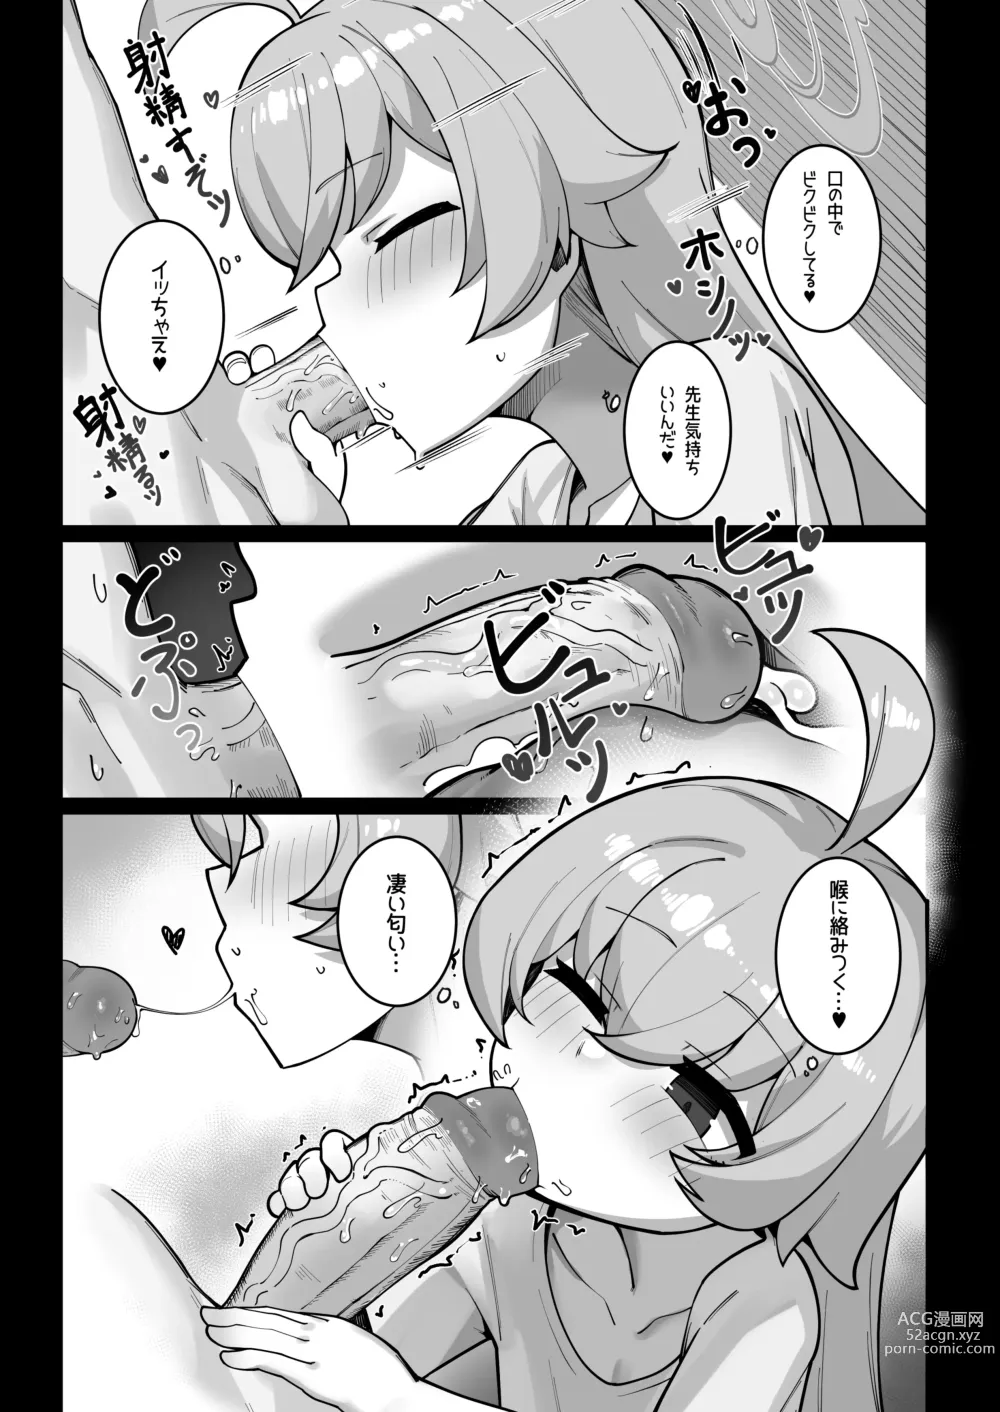 Page 12 of doujinshi Kujira wa Chiisana Shiawase wo Yumemiru (uncensored)